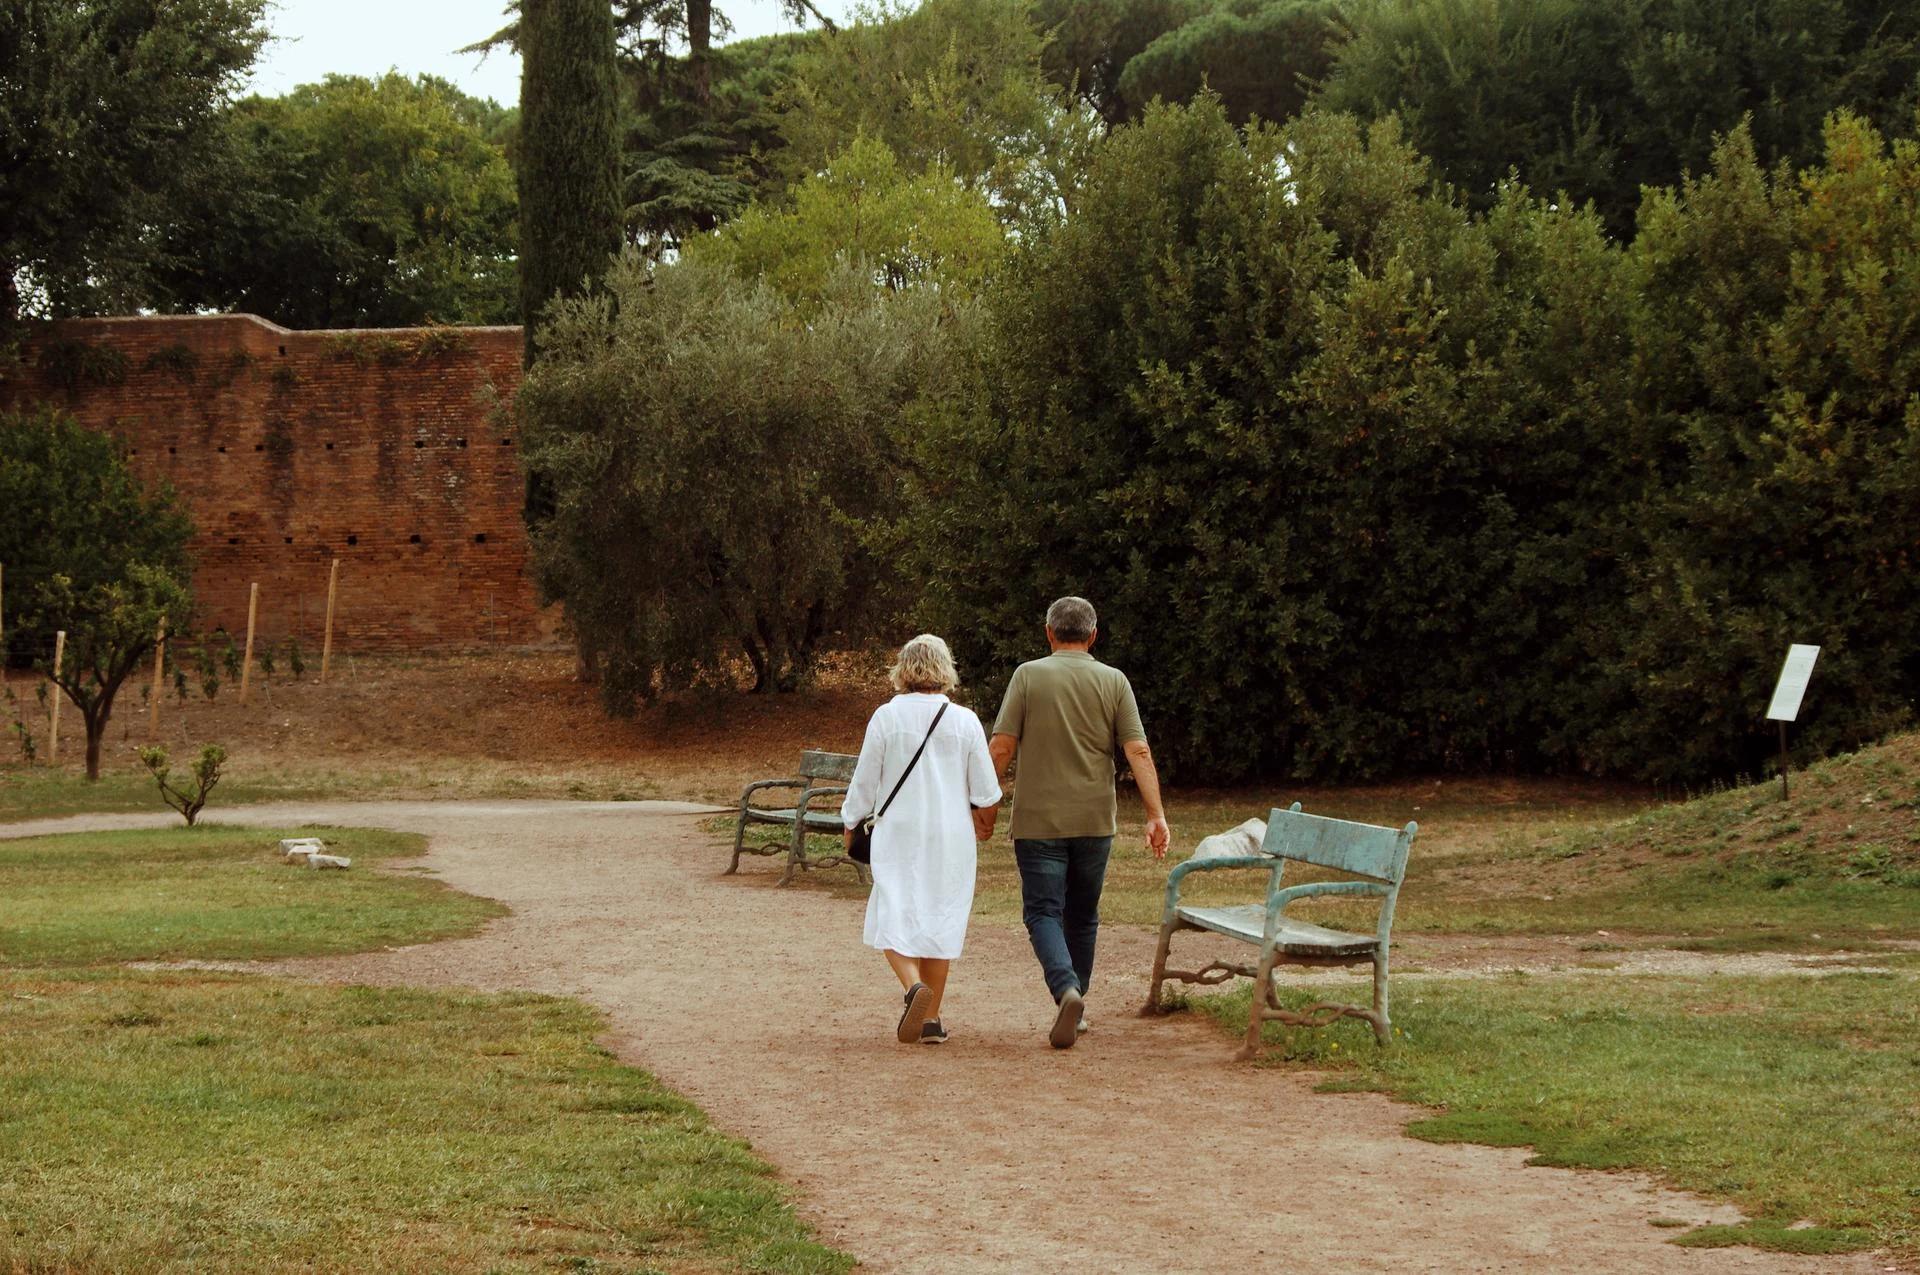 Gammelt par på spadseretur i en park